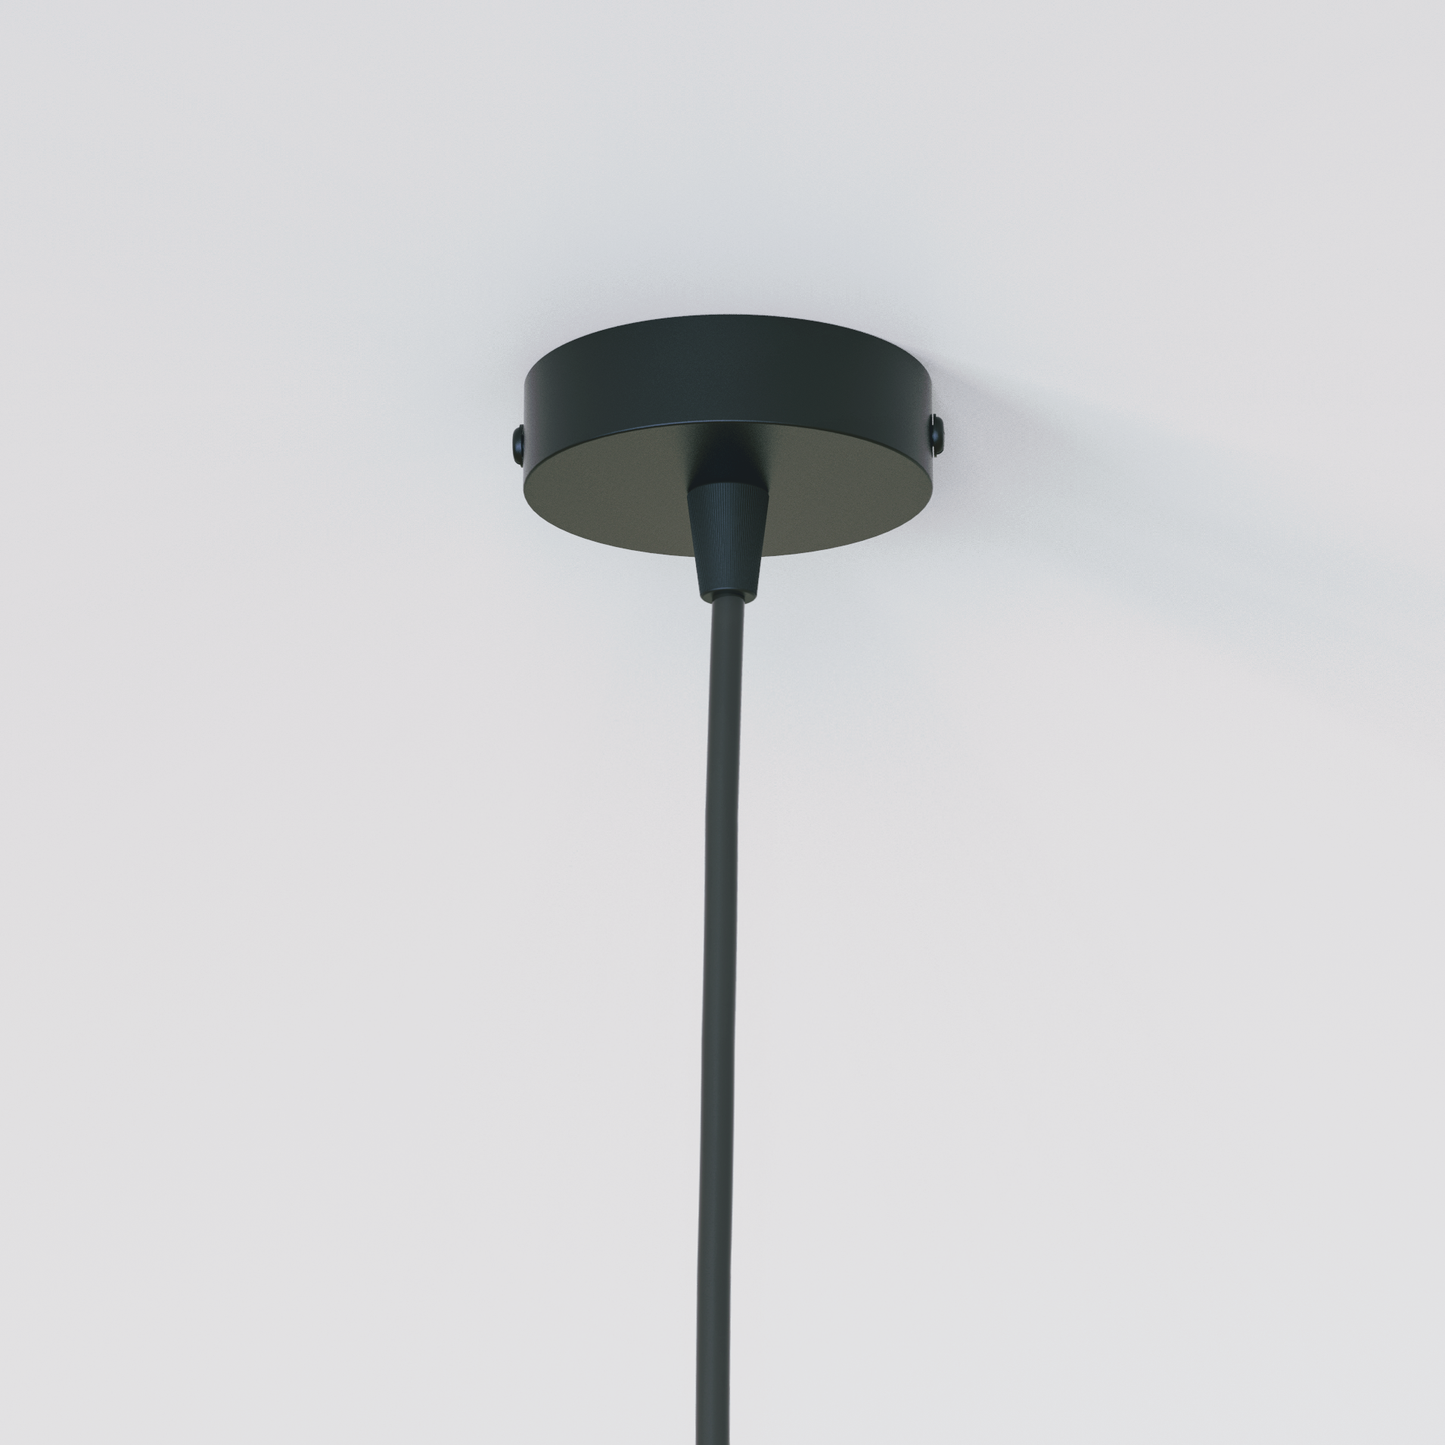 Seashell Pendant Lamp: Designer Hanging Lamp Chandelier | Handmade Cafe Lighting | Restaurants Decor Living Room [30cm/12in, 40cm/16in Dia]